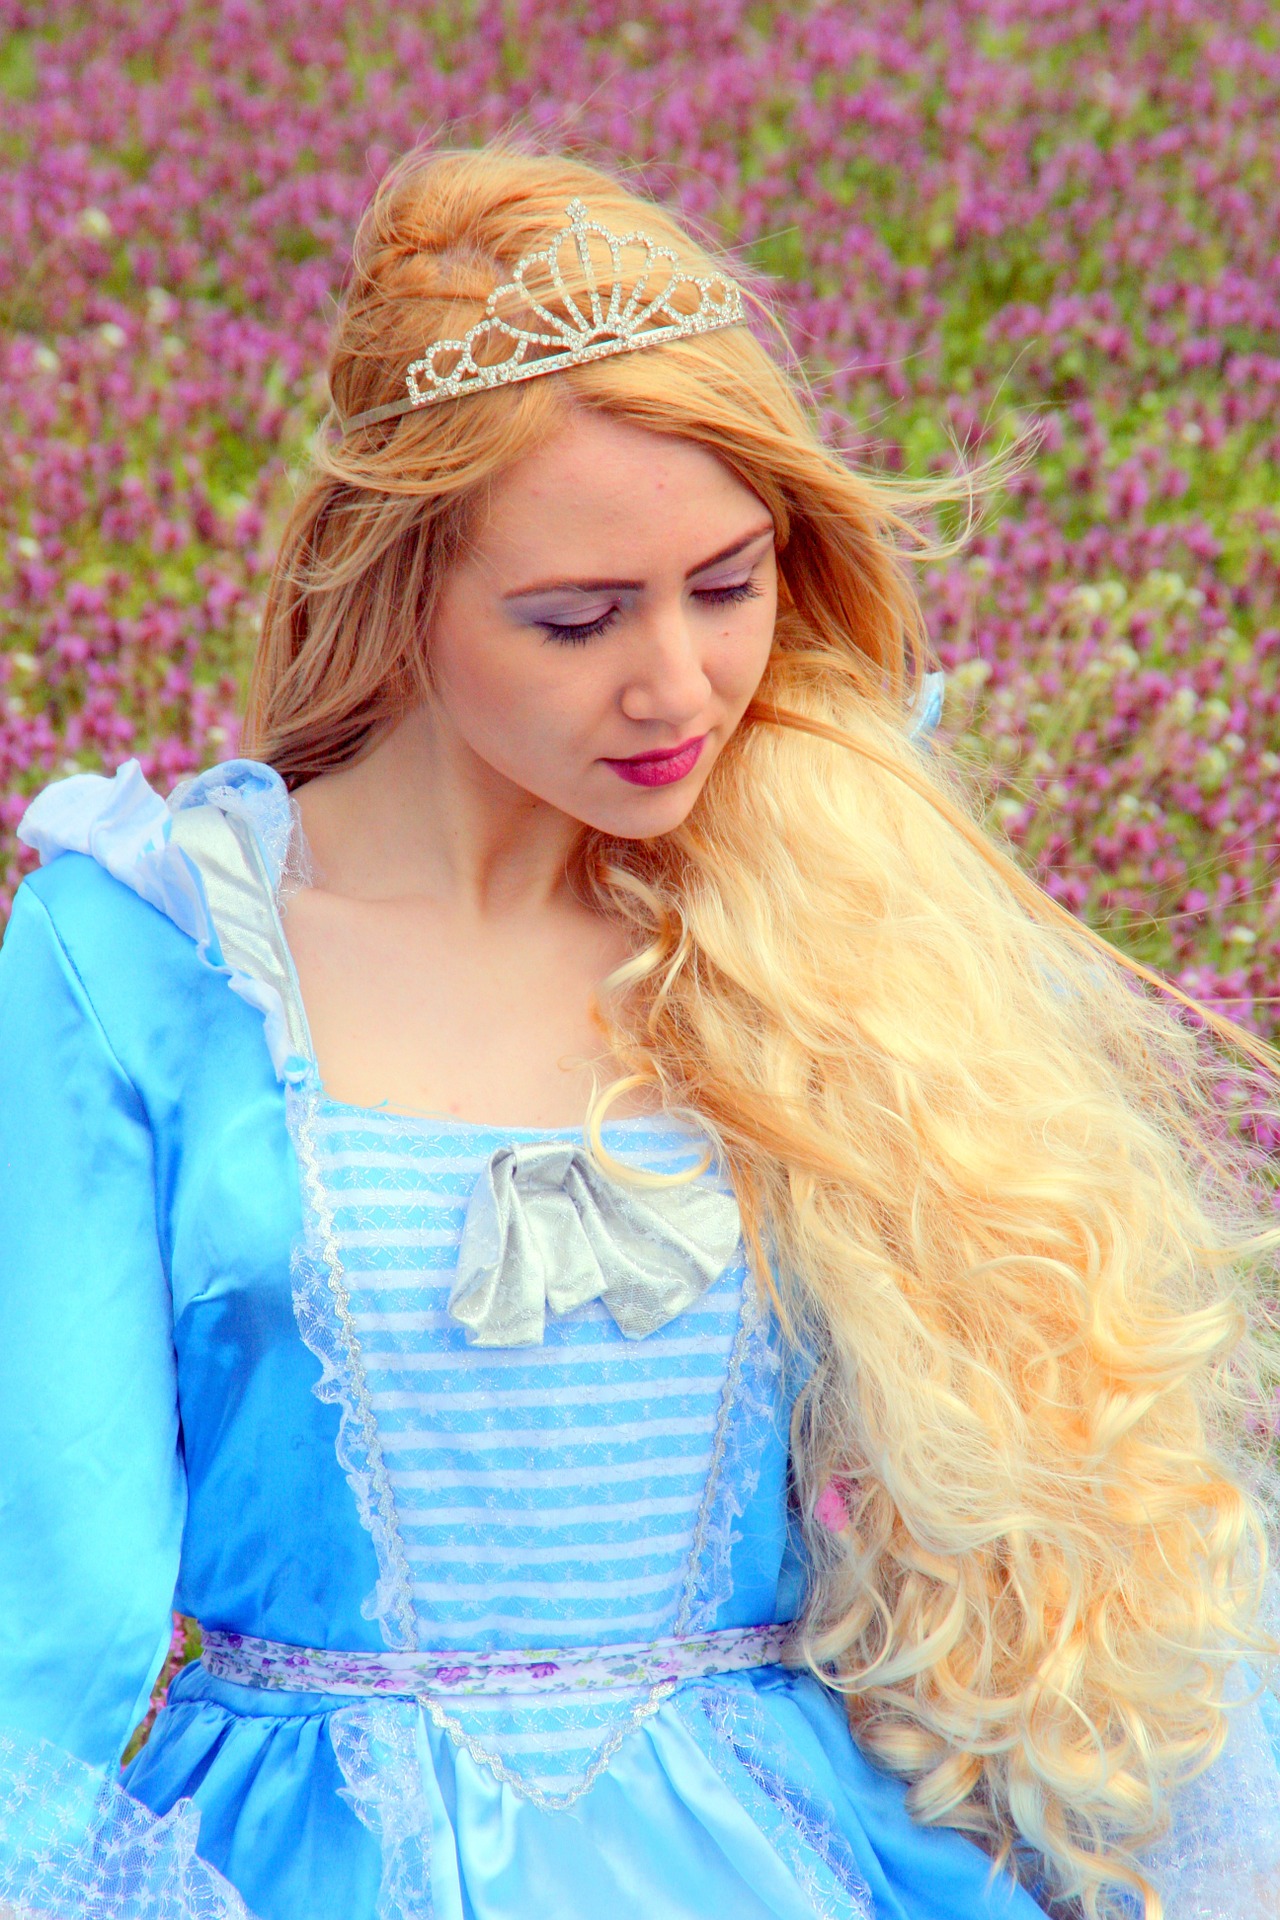 Slikom je prikazana princeza duge kose, s krunom na glavi i u plavoj haljini.